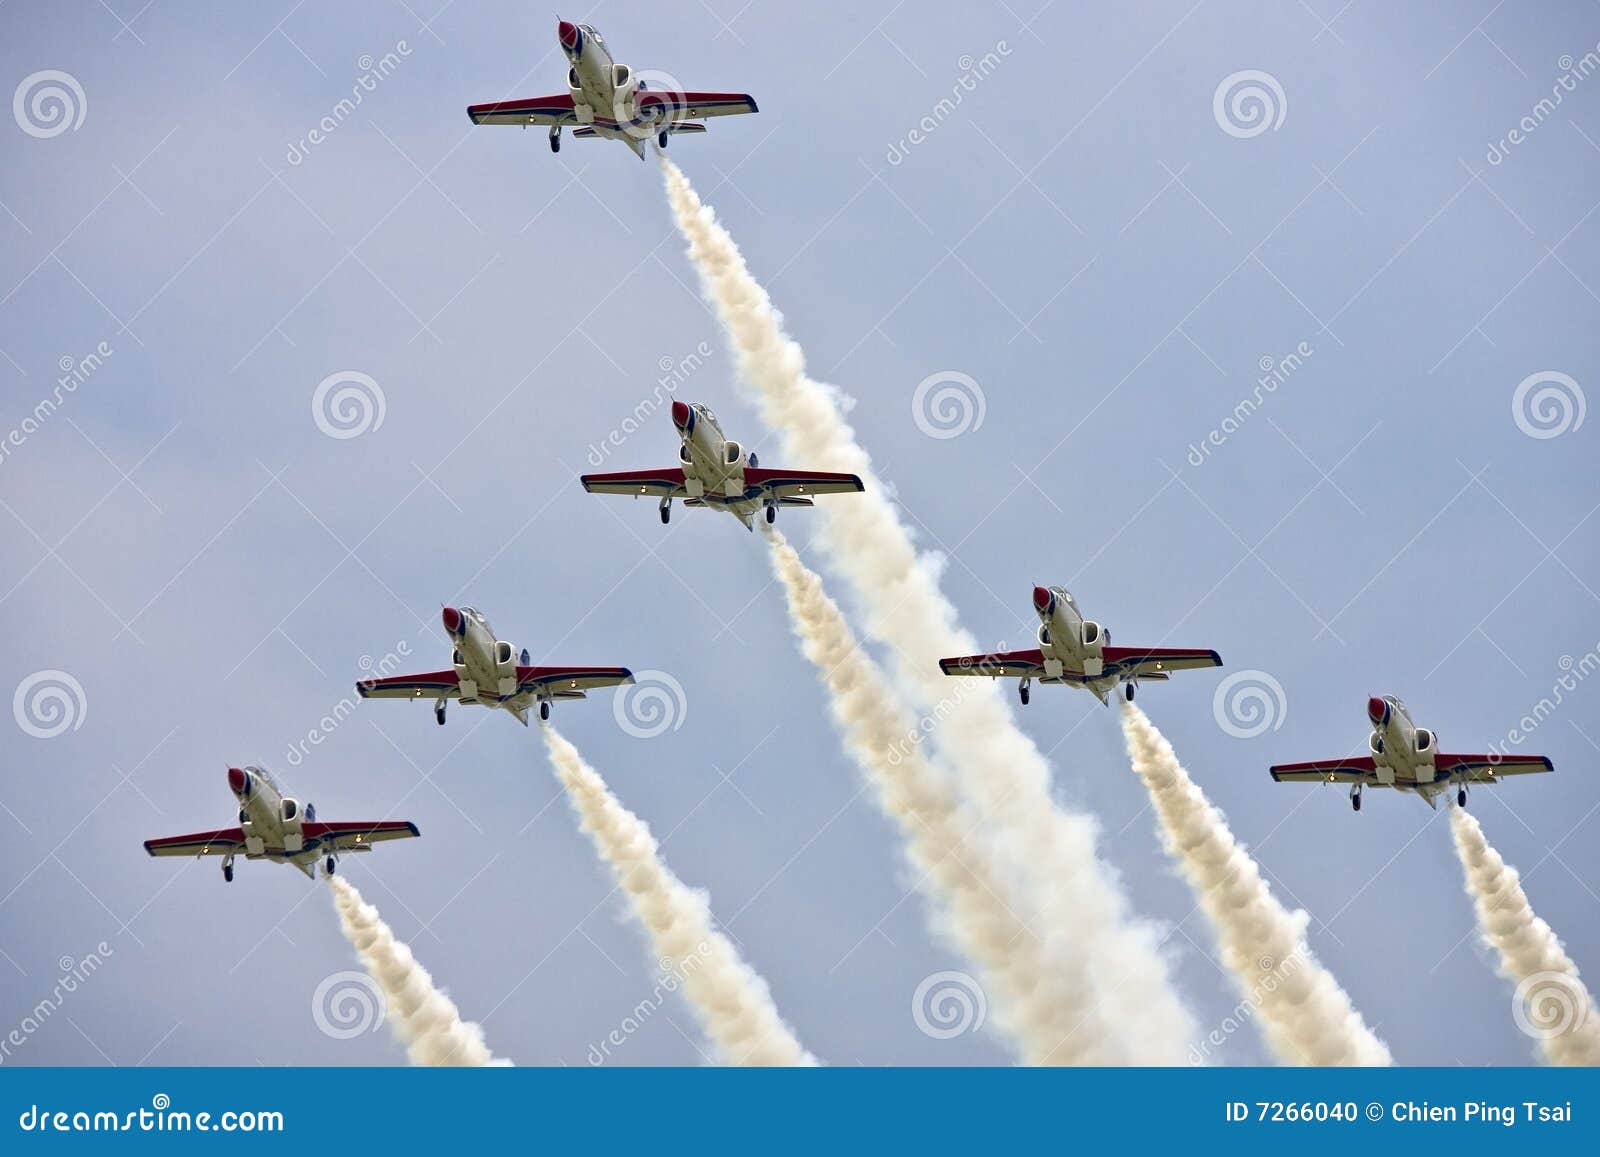 aerobatics team display at airshow